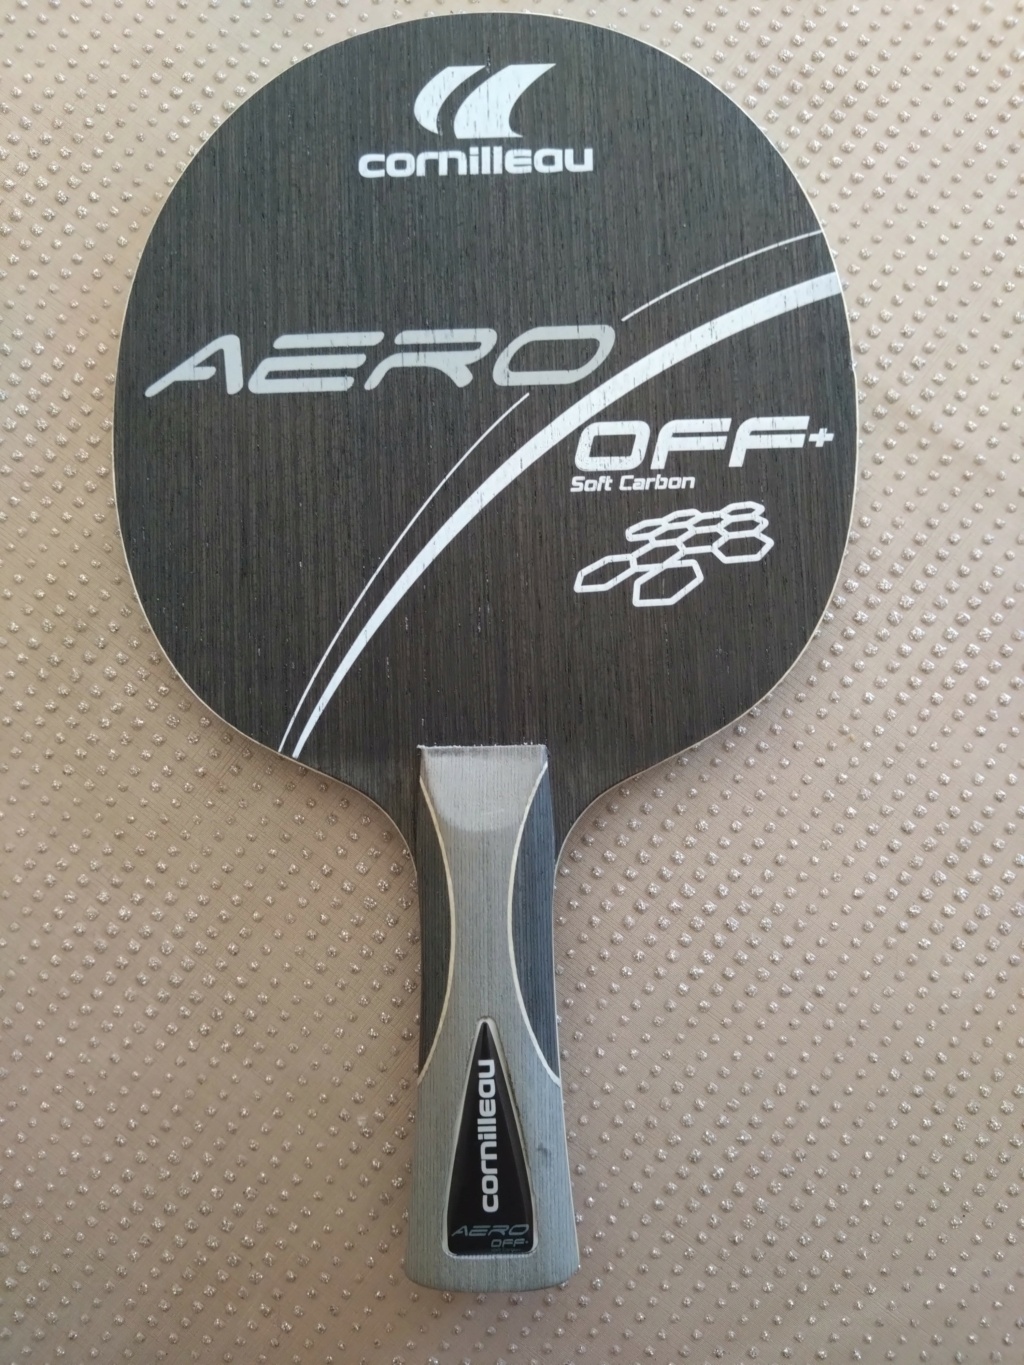 Cornilleau Aero Off+ Soft Carbon, neuf, très léger (66g) 40€ Dsc_0010